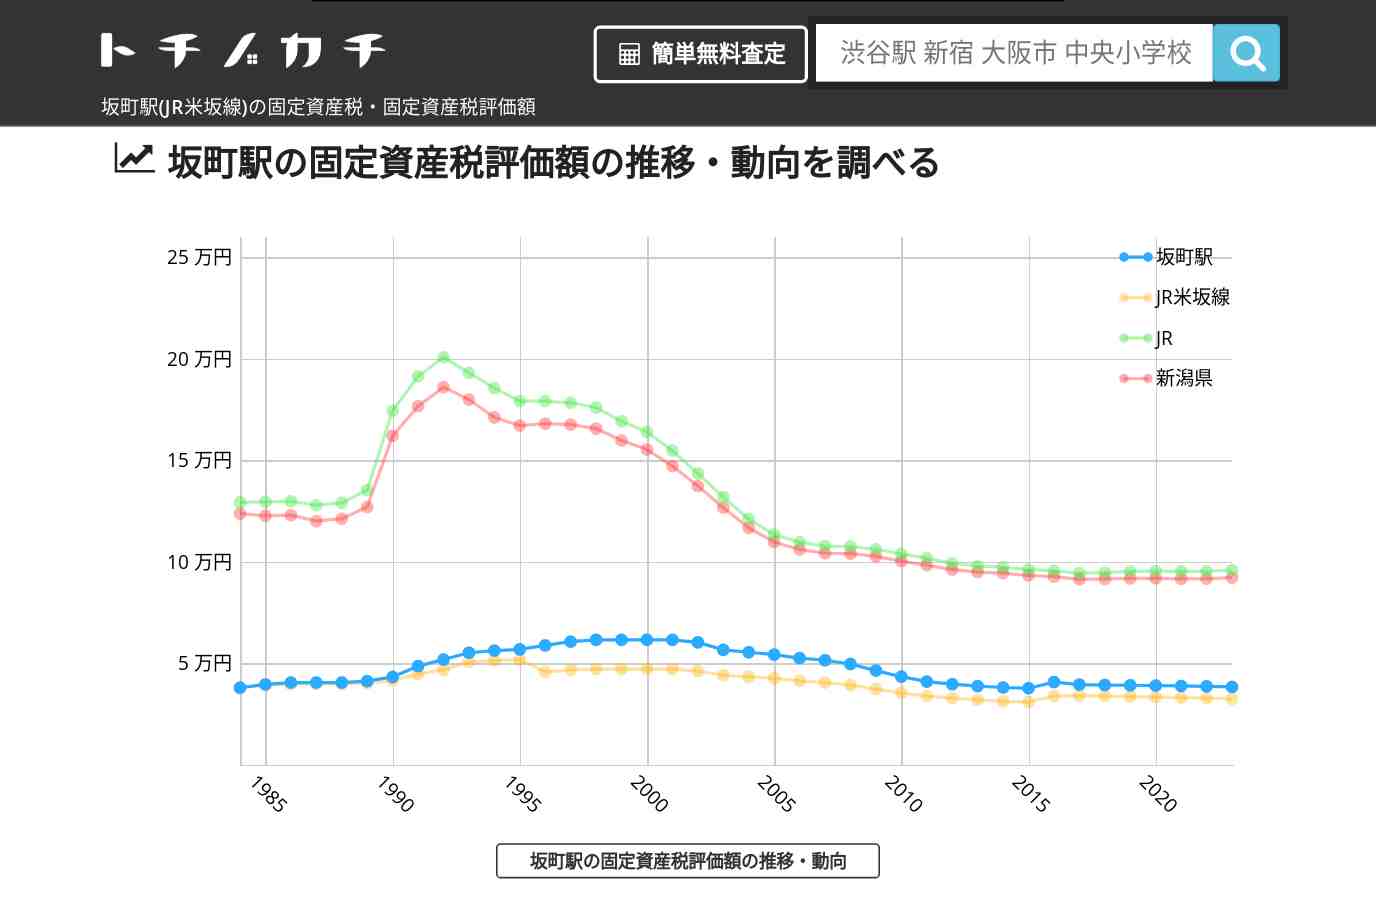 坂町駅(JR米坂線)の固定資産税・固定資産税評価額 | トチノカチ